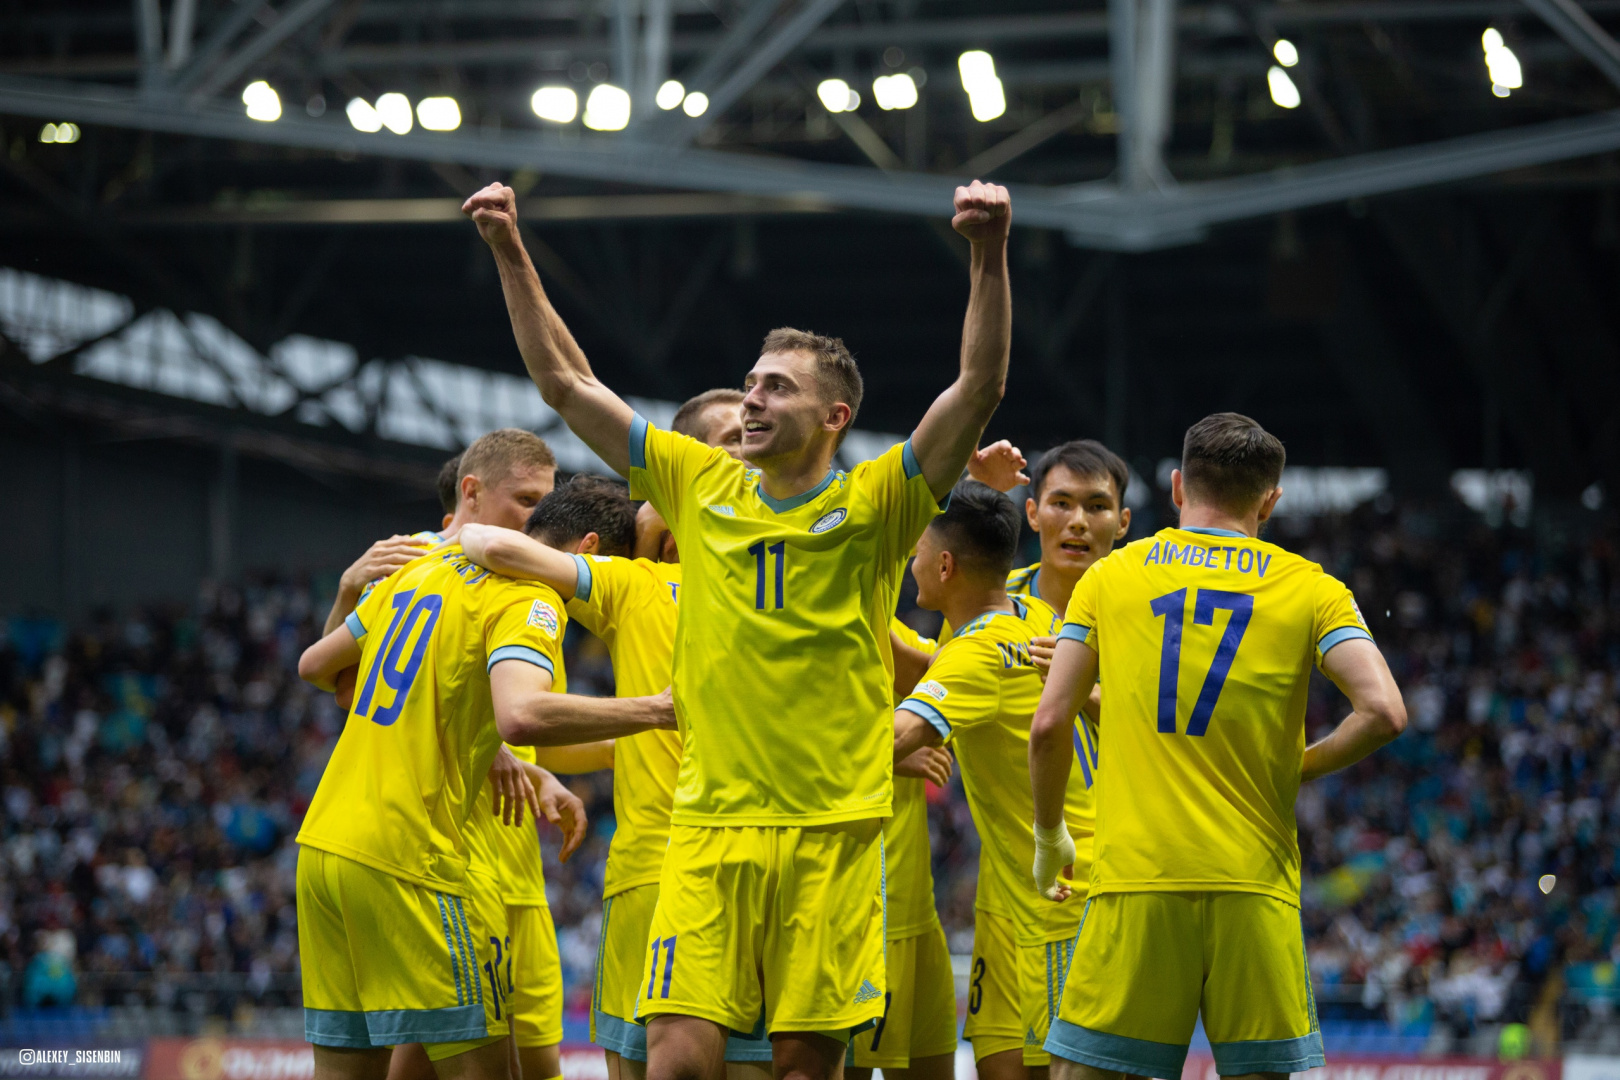 Сан-Марино – Казахстан: прогноз от Айдына Кожахмета на матч квалификации ЕВРО-2024